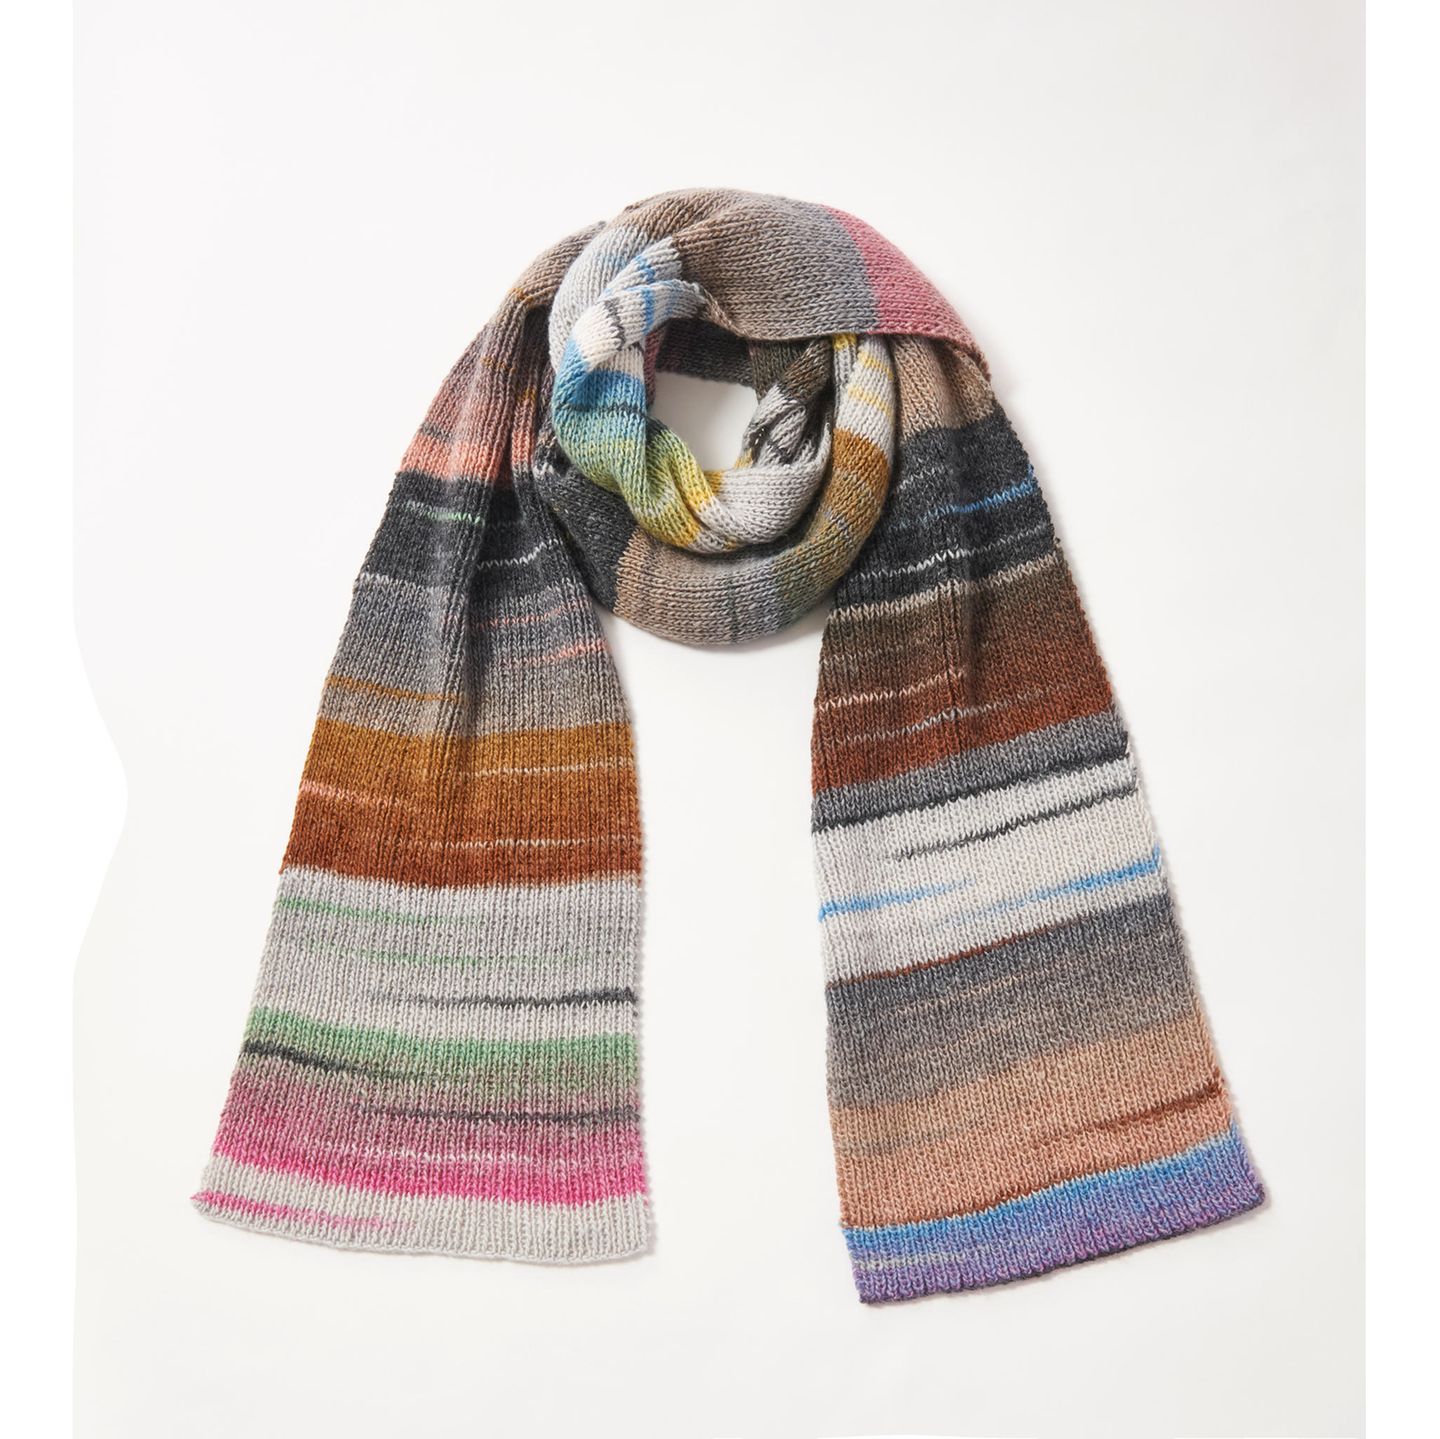 Großen Multicolor-Schal stricken: ein gestreifter bunter Schal